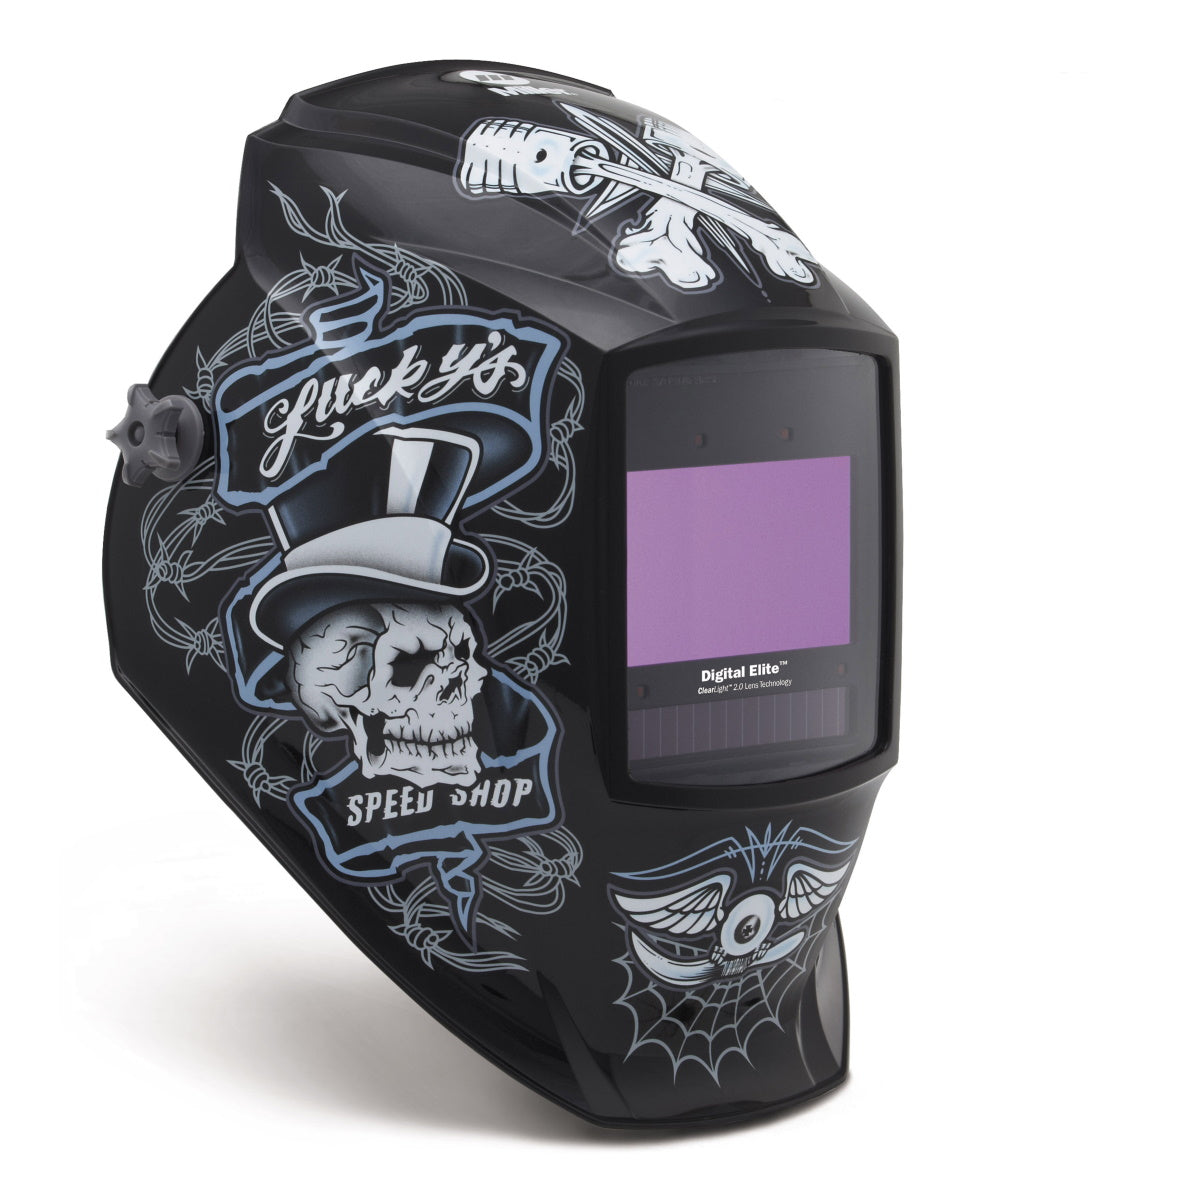 Miller Lucky's Speed Shop Digital Elite Auto Darkening Welding Helmet with ClearLight 2.0 Lens (289756)